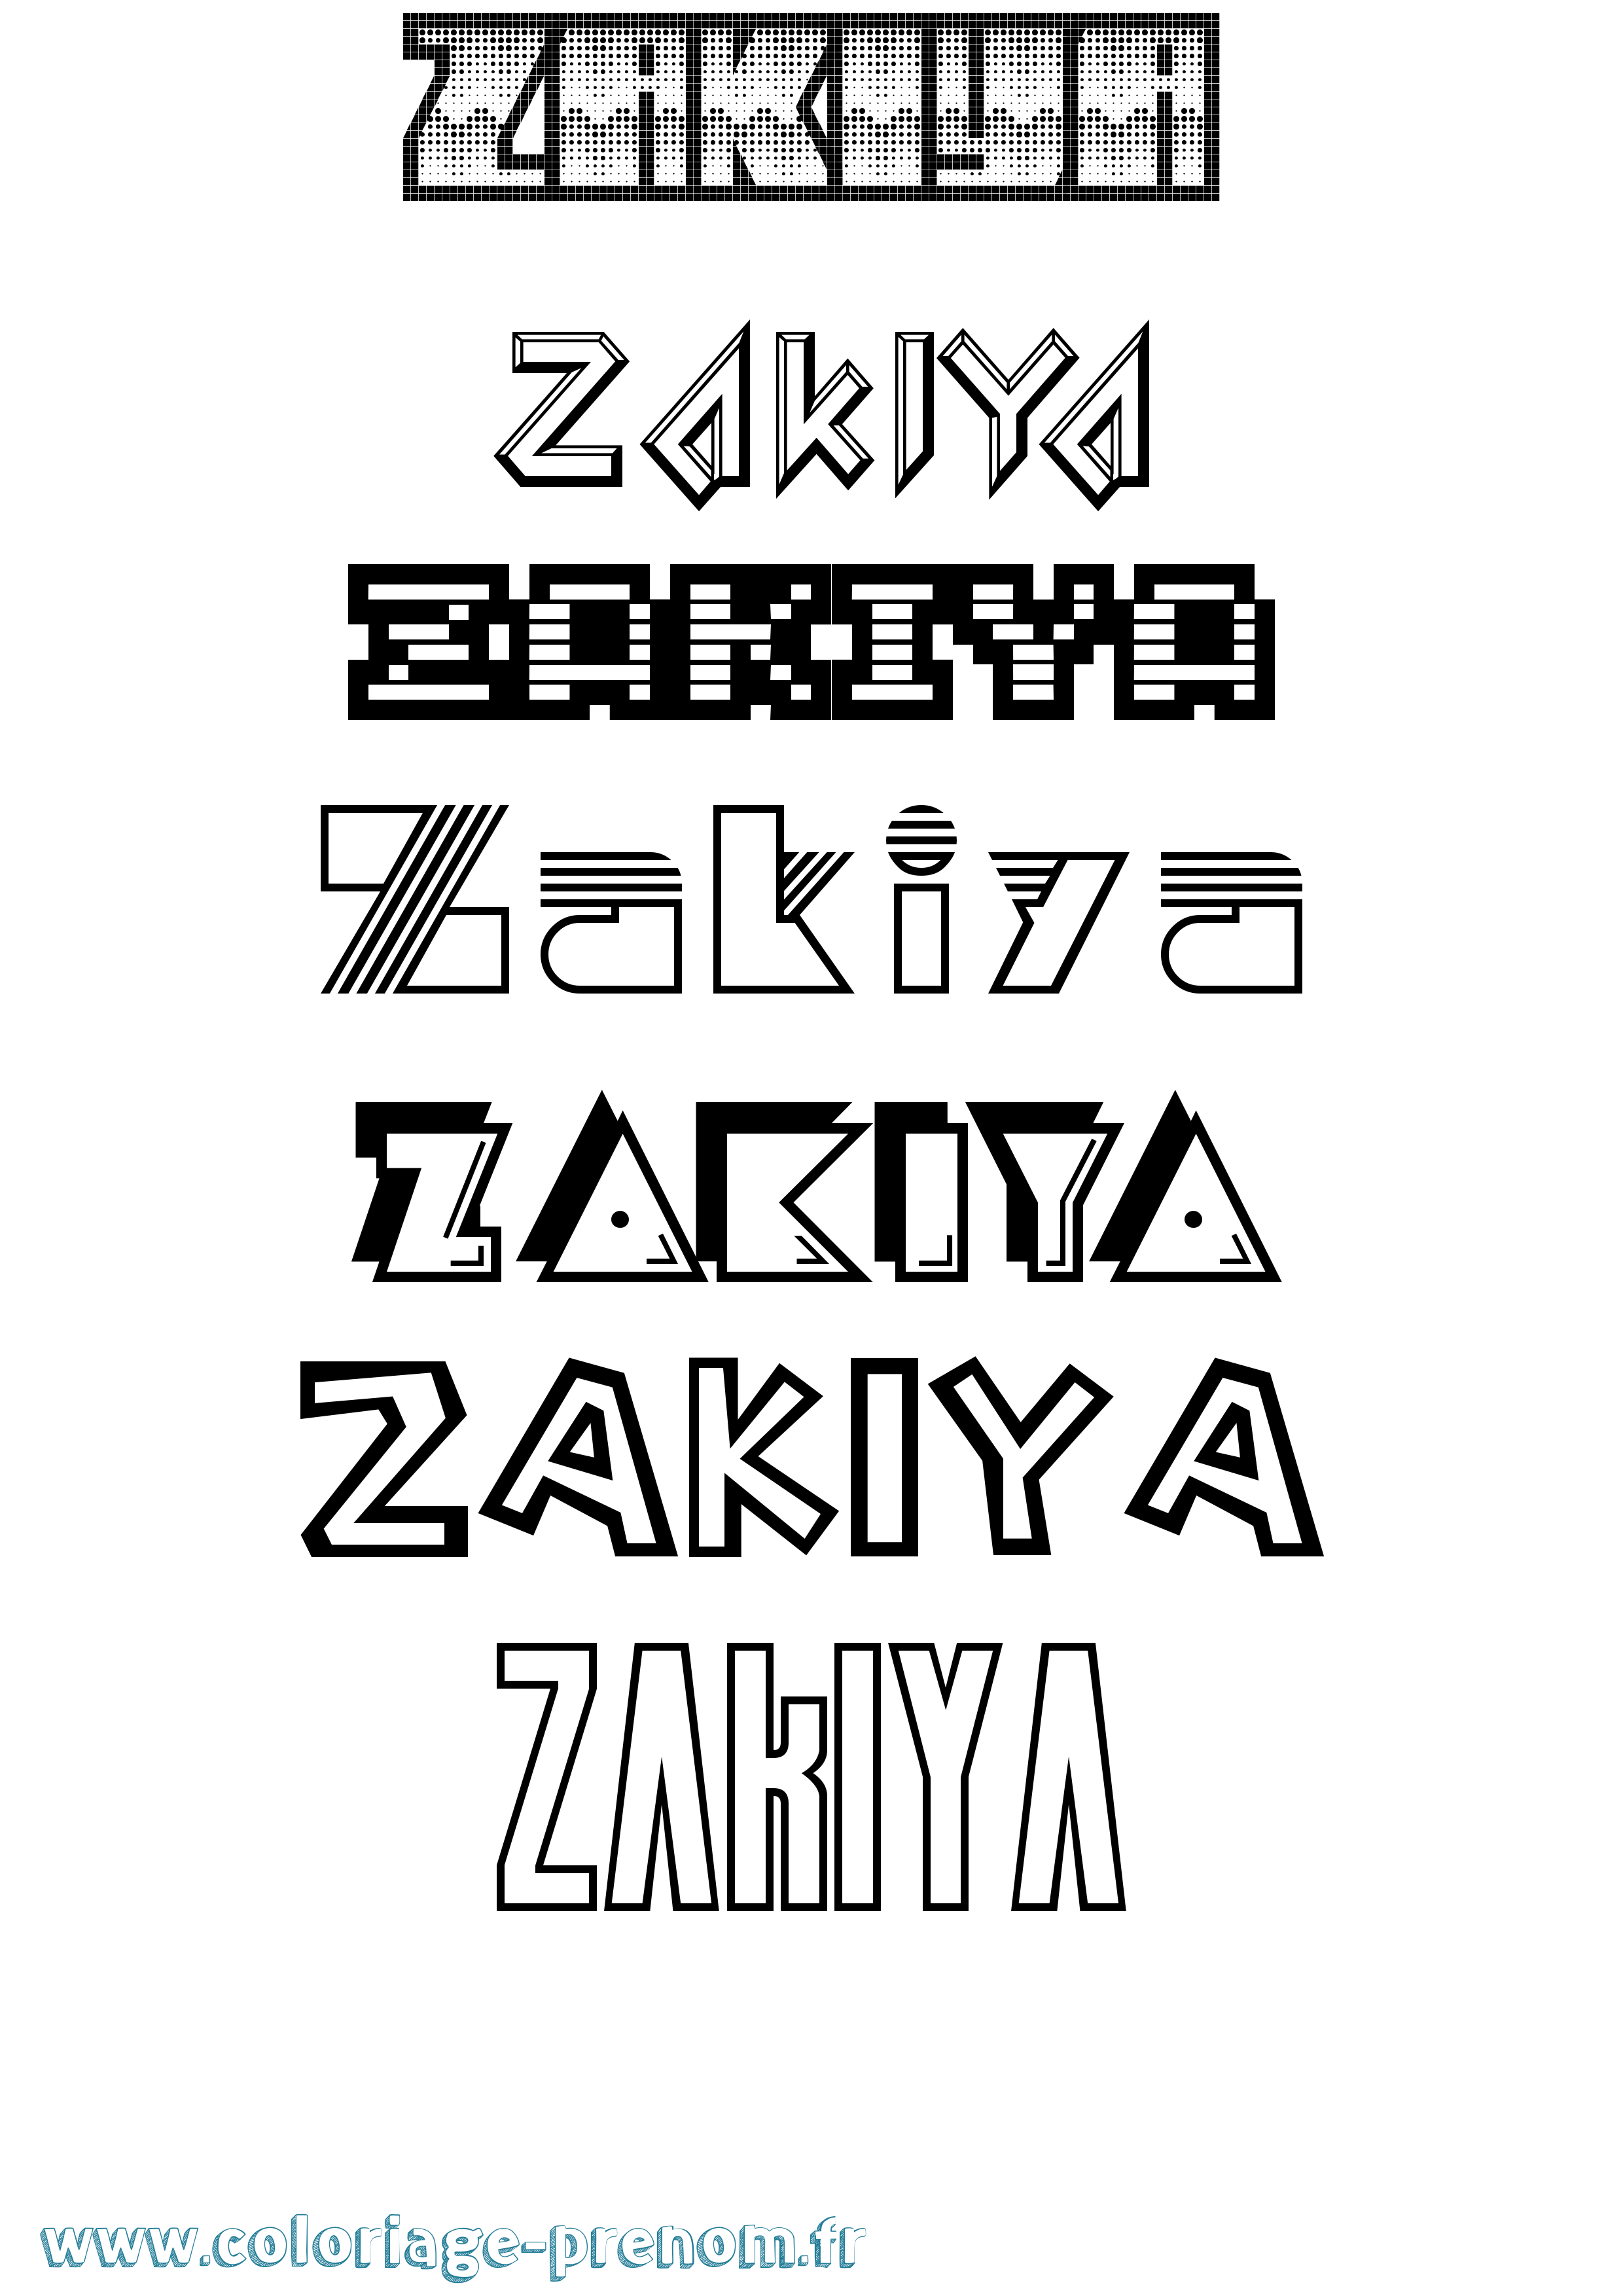 Coloriage prénom Zakiya Jeux Vidéos